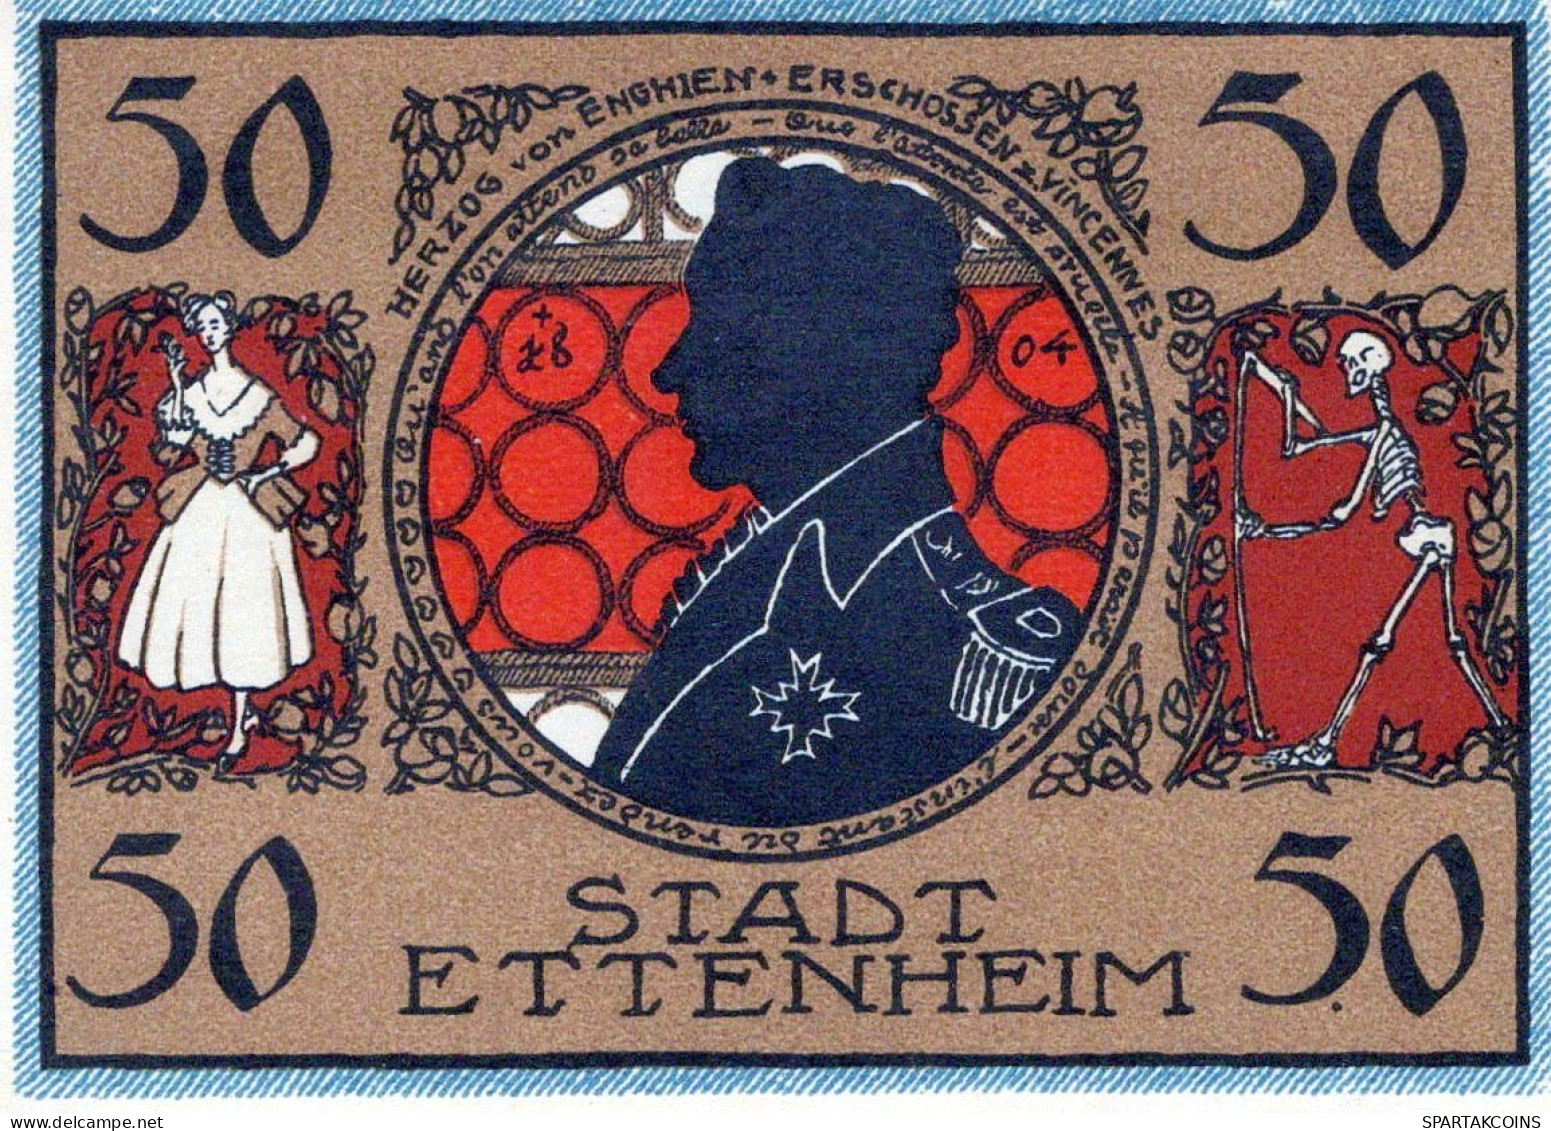 50 PFENNIG 1922 Stadt ETTENHEIM Baden UNC DEUTSCHLAND Notgeld Banknote #PA559 - [11] Local Banknote Issues